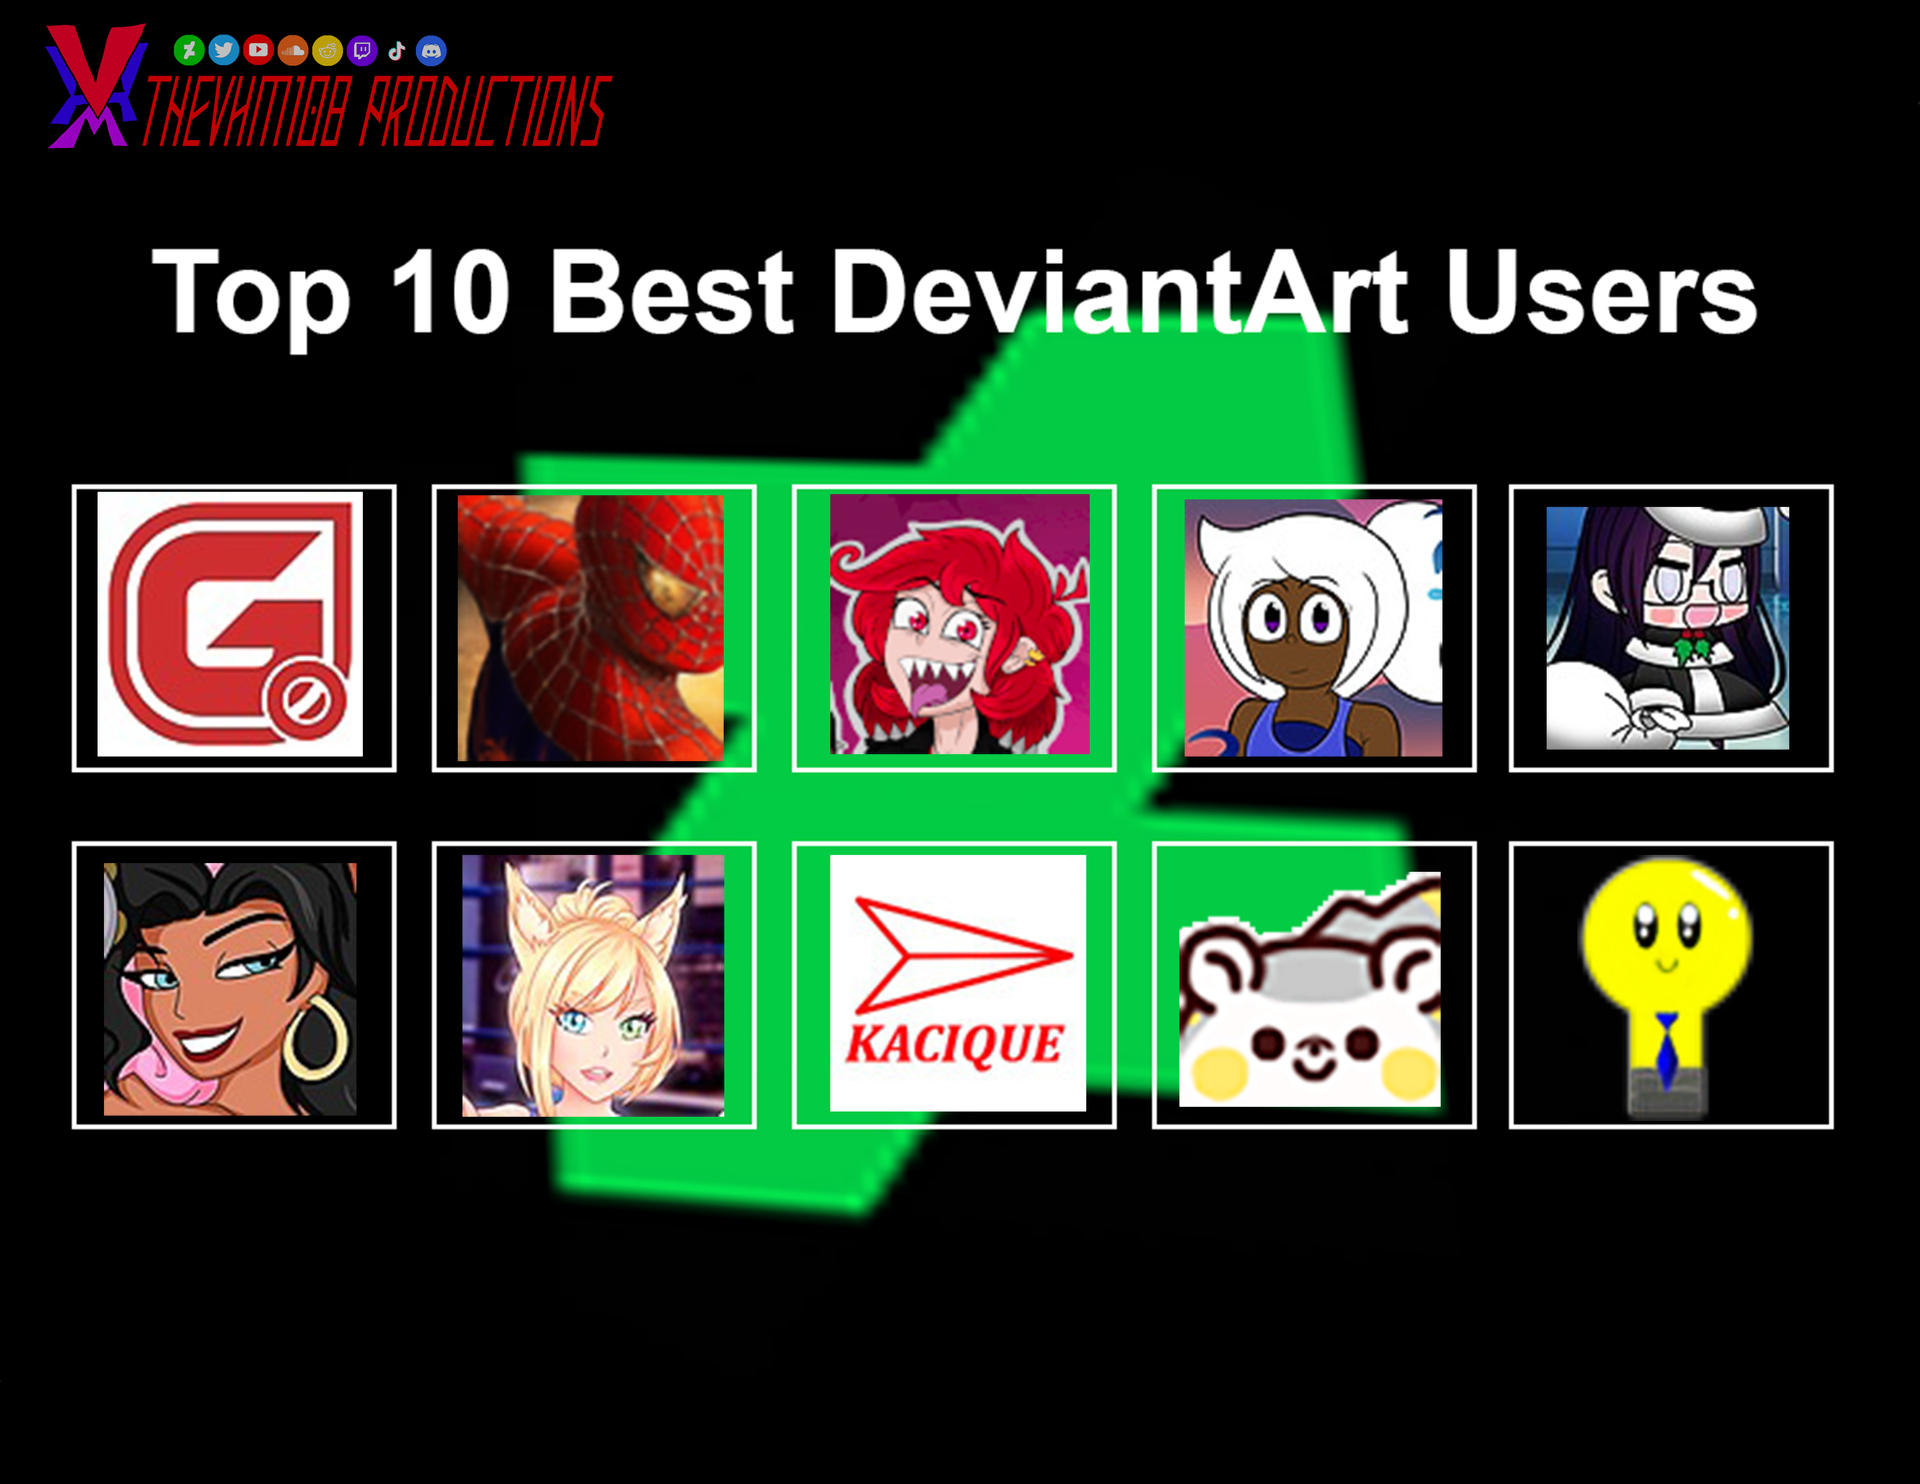 My Top 10 Best DeviantArt Artists by TheVHM108 on DeviantArt